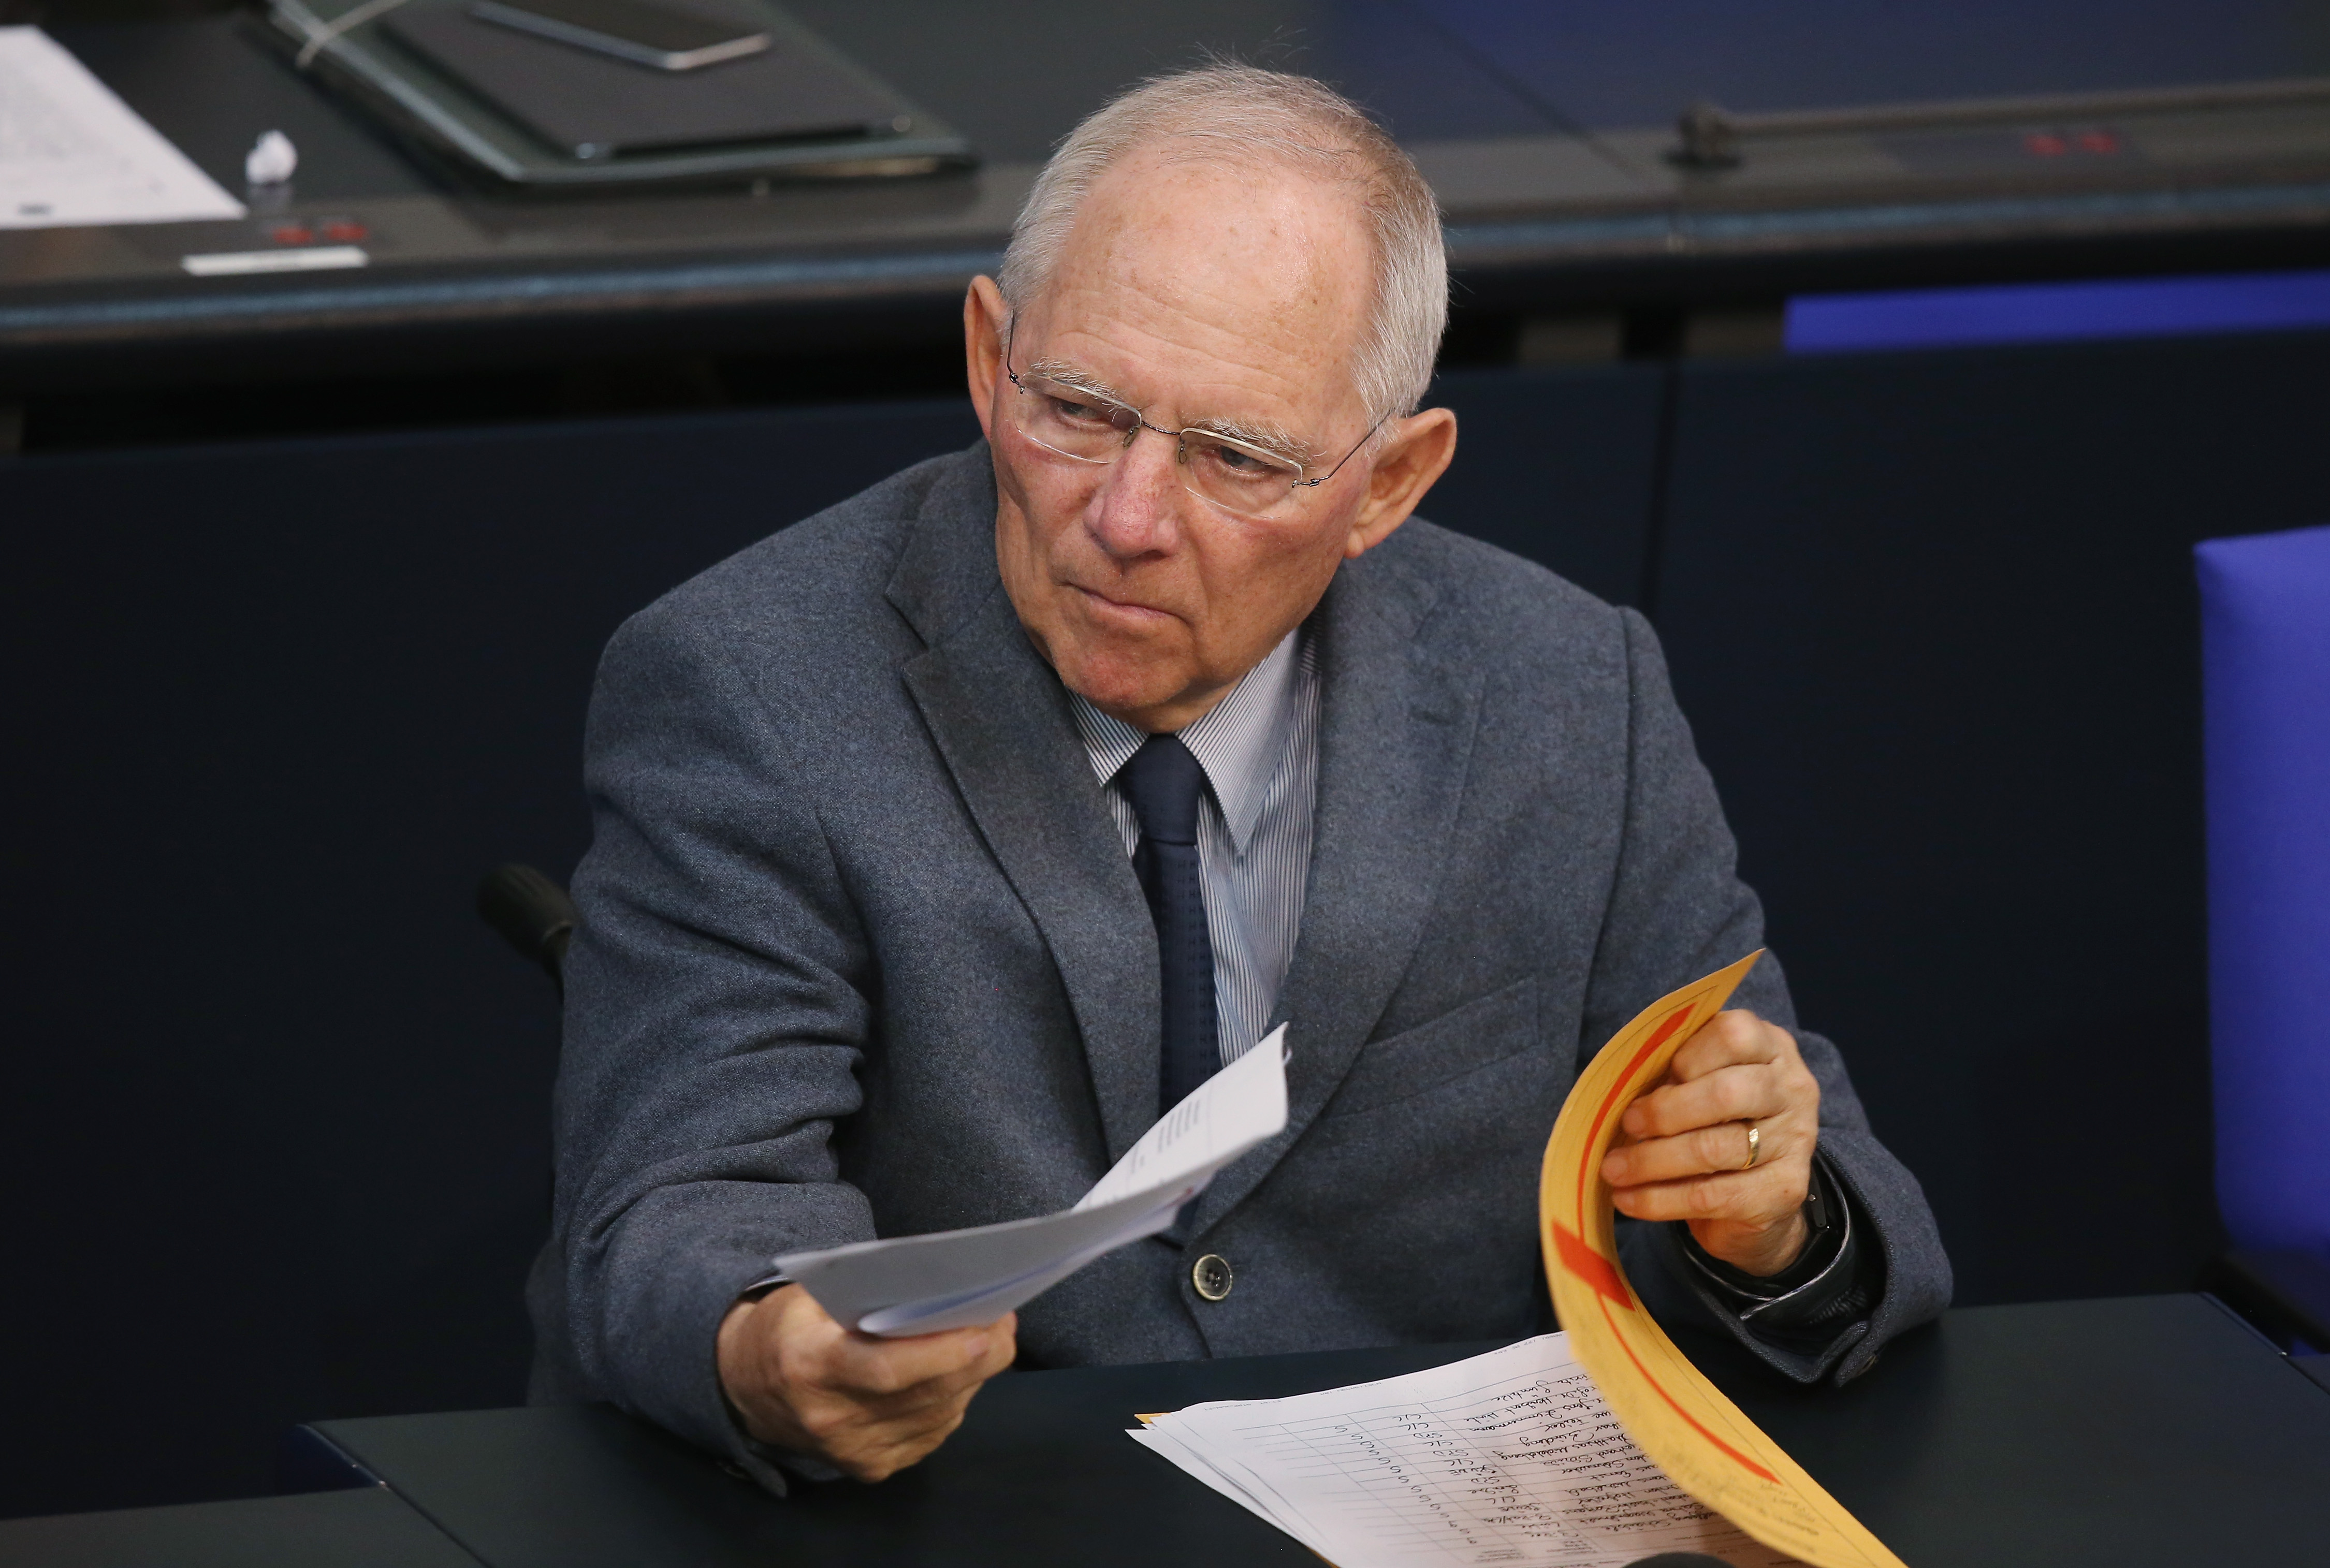 Erst nach 2017: Schäuble hält bis zu 20 Milliarden Euro Steuersenkung für möglich